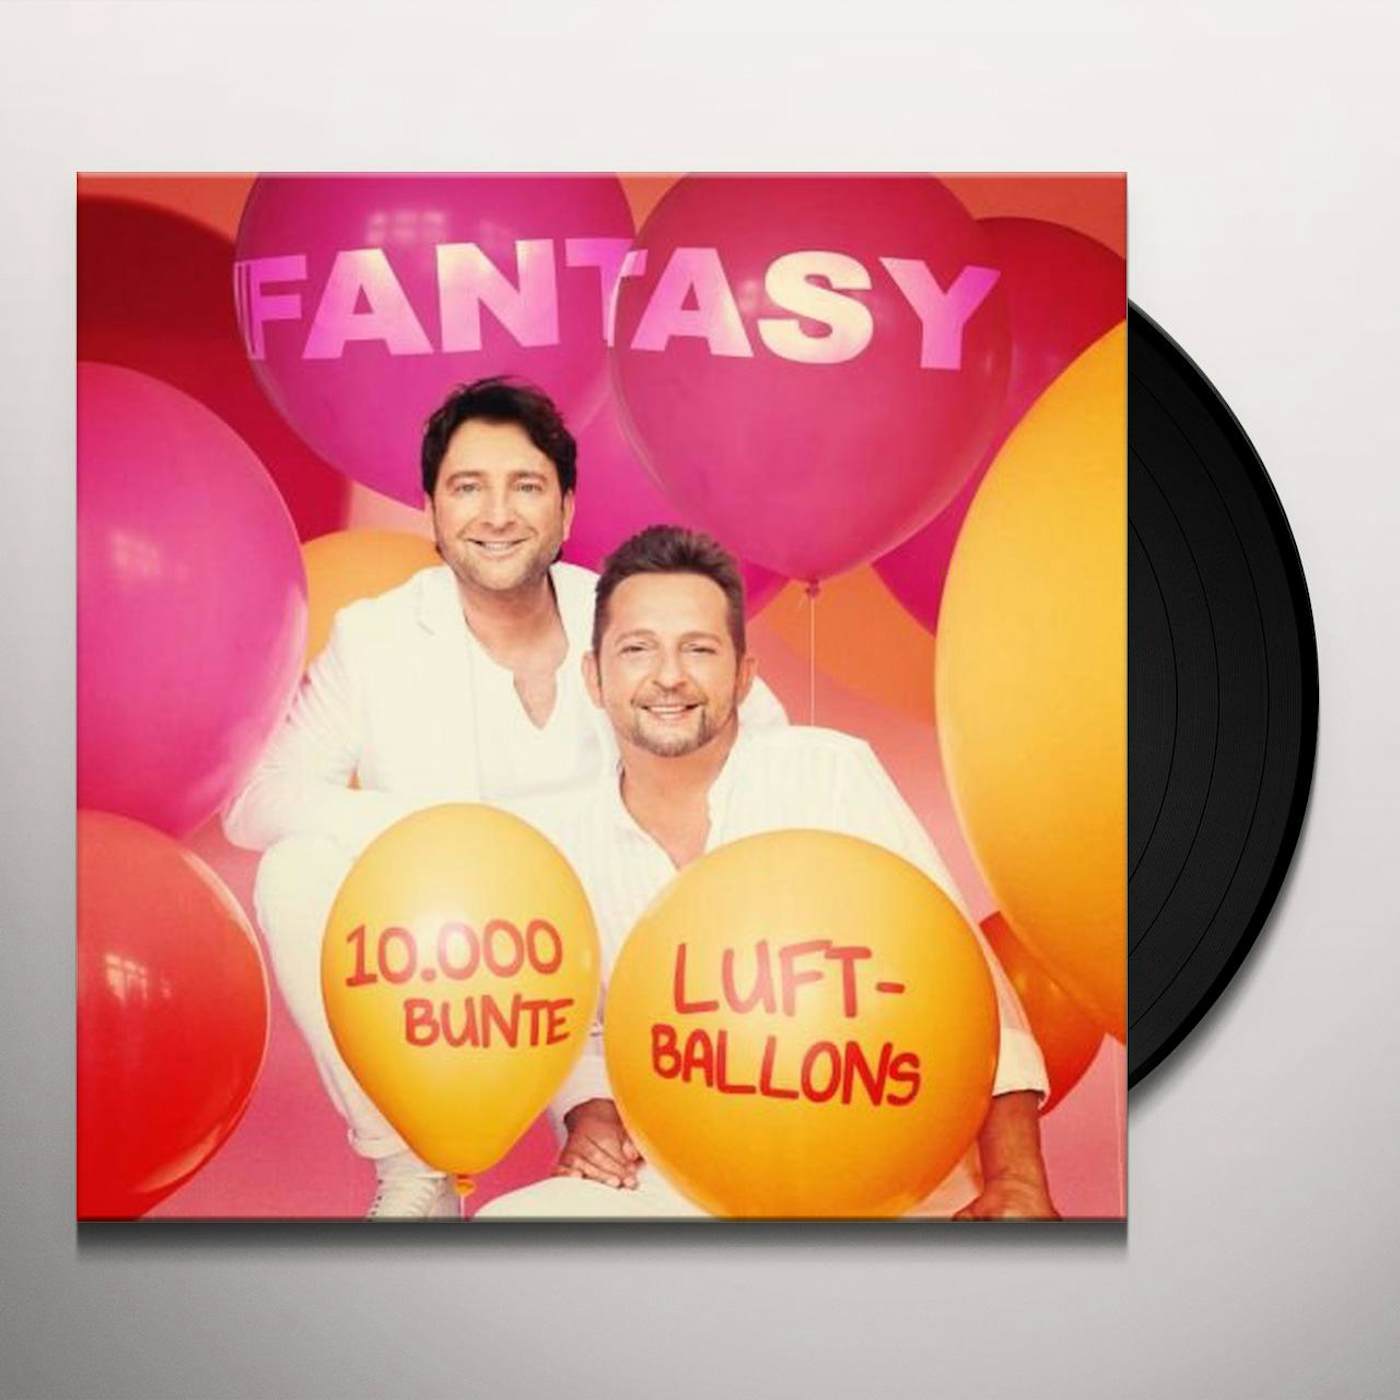 Fantasy 10000 BUNTE LUFTBALLONS Vinyl Record